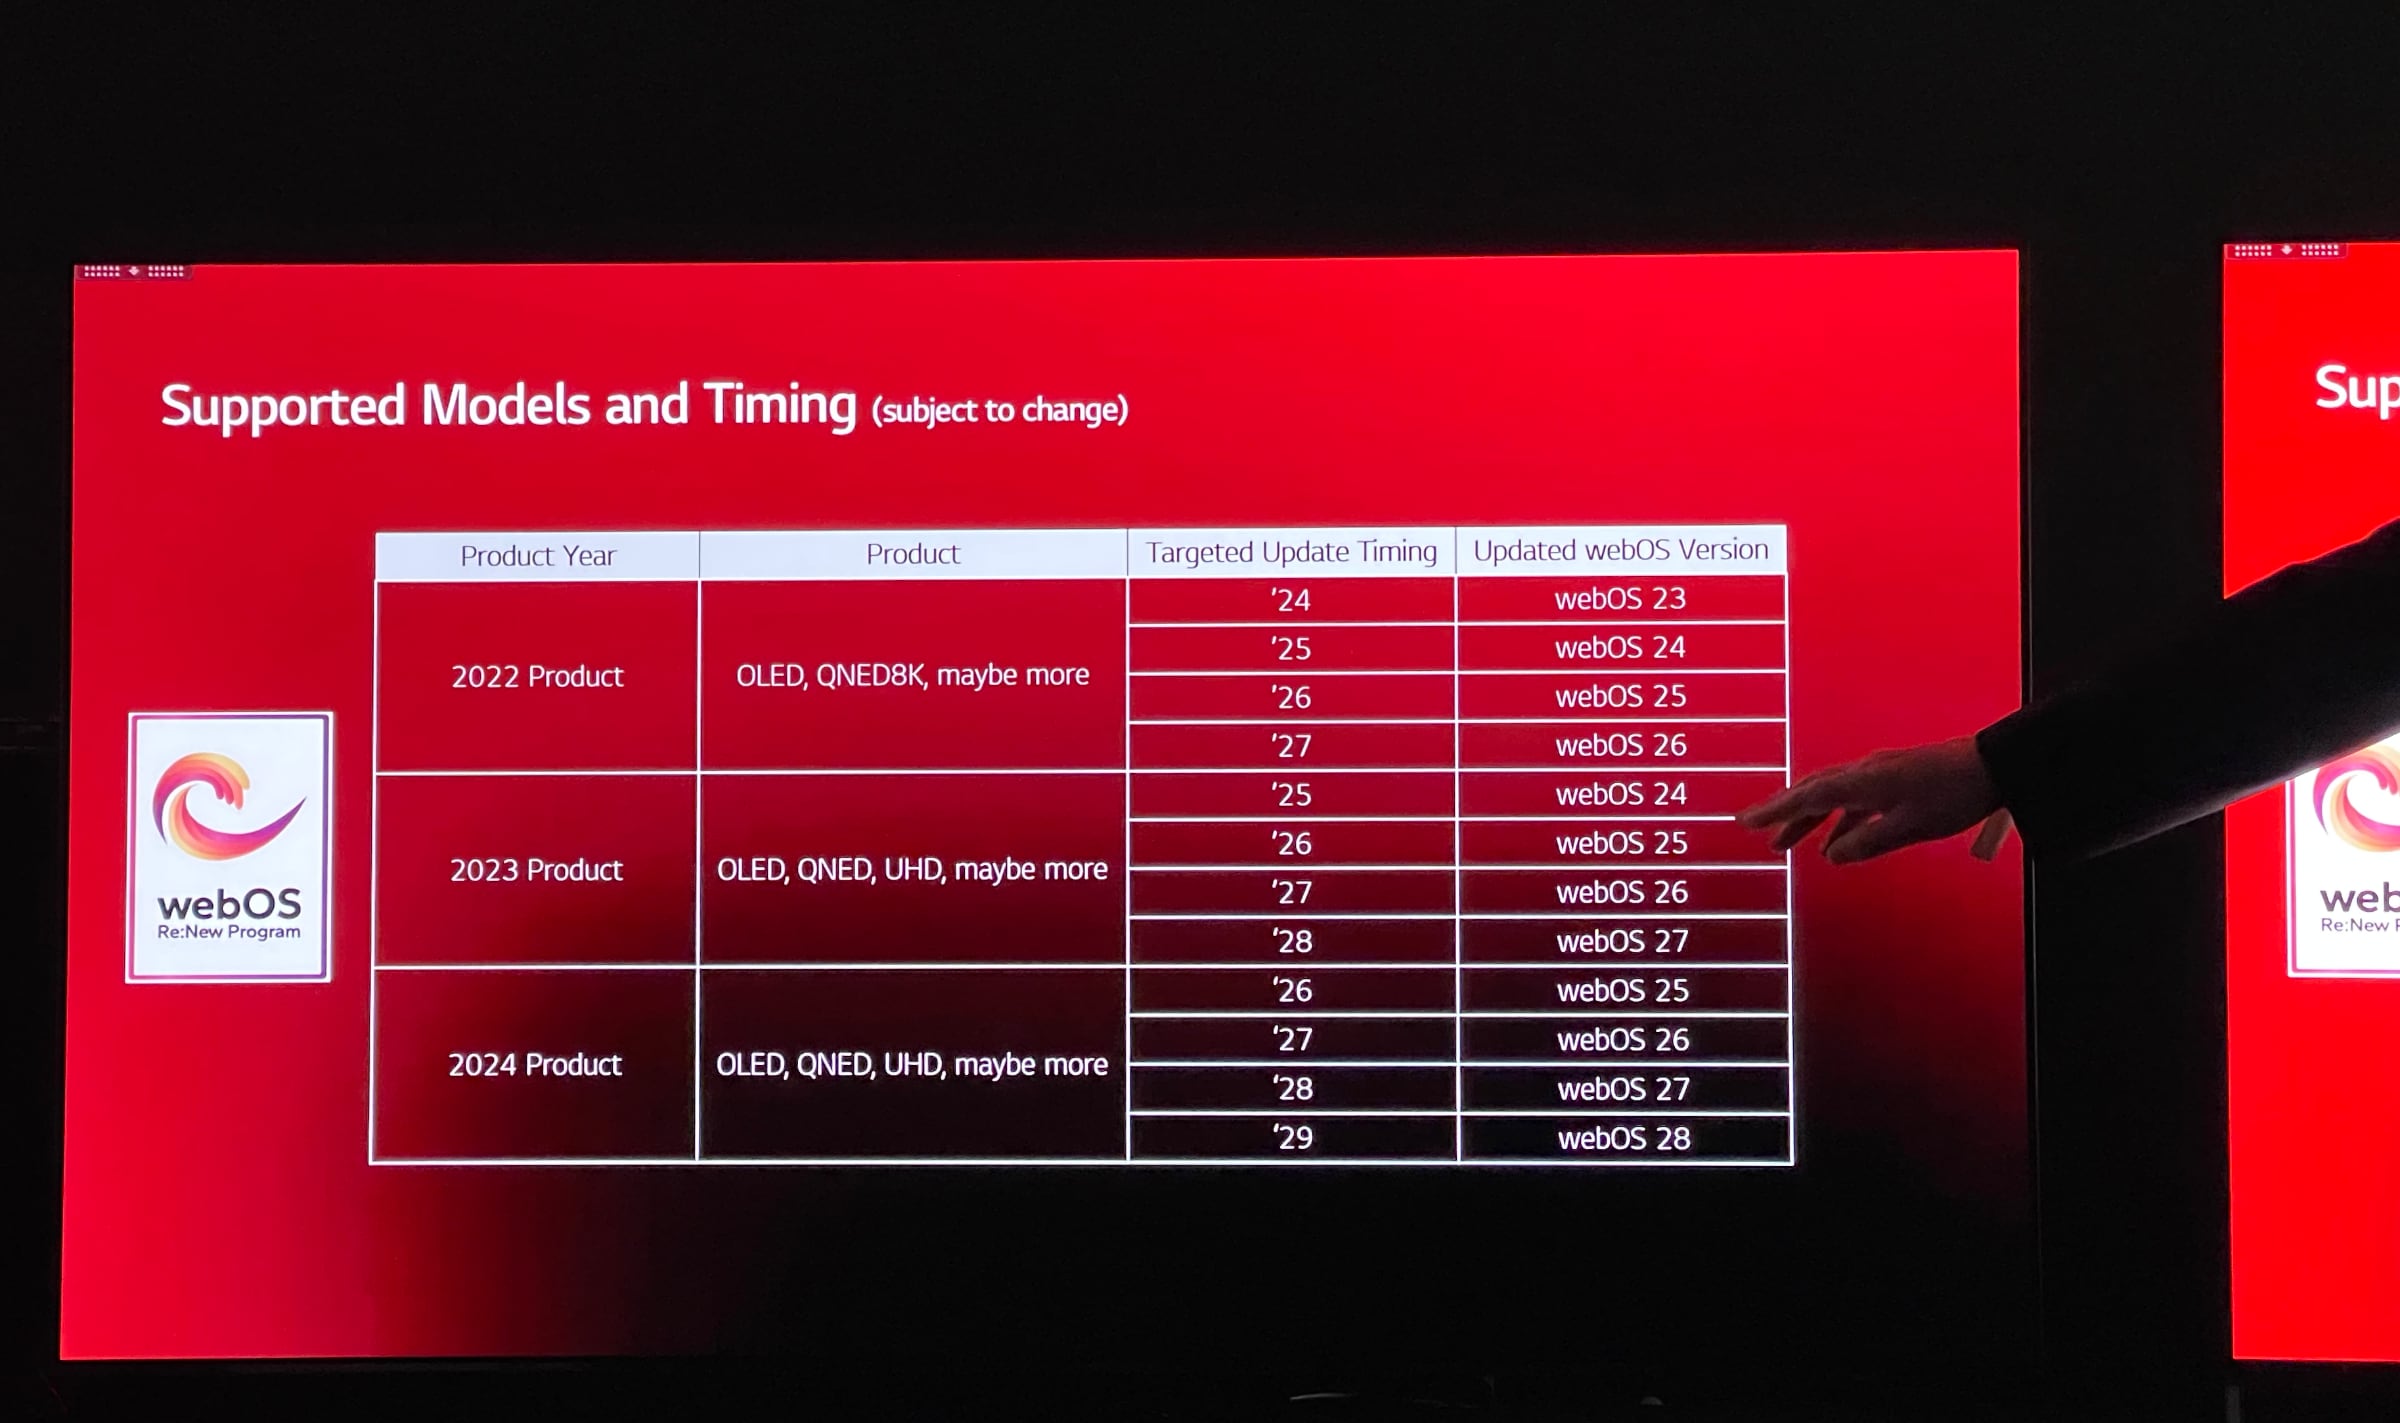 Обновления webOS для телевизоров LG Smart TV 2022, 2023 и 2024 годов. Фото: flatpanelshd.com